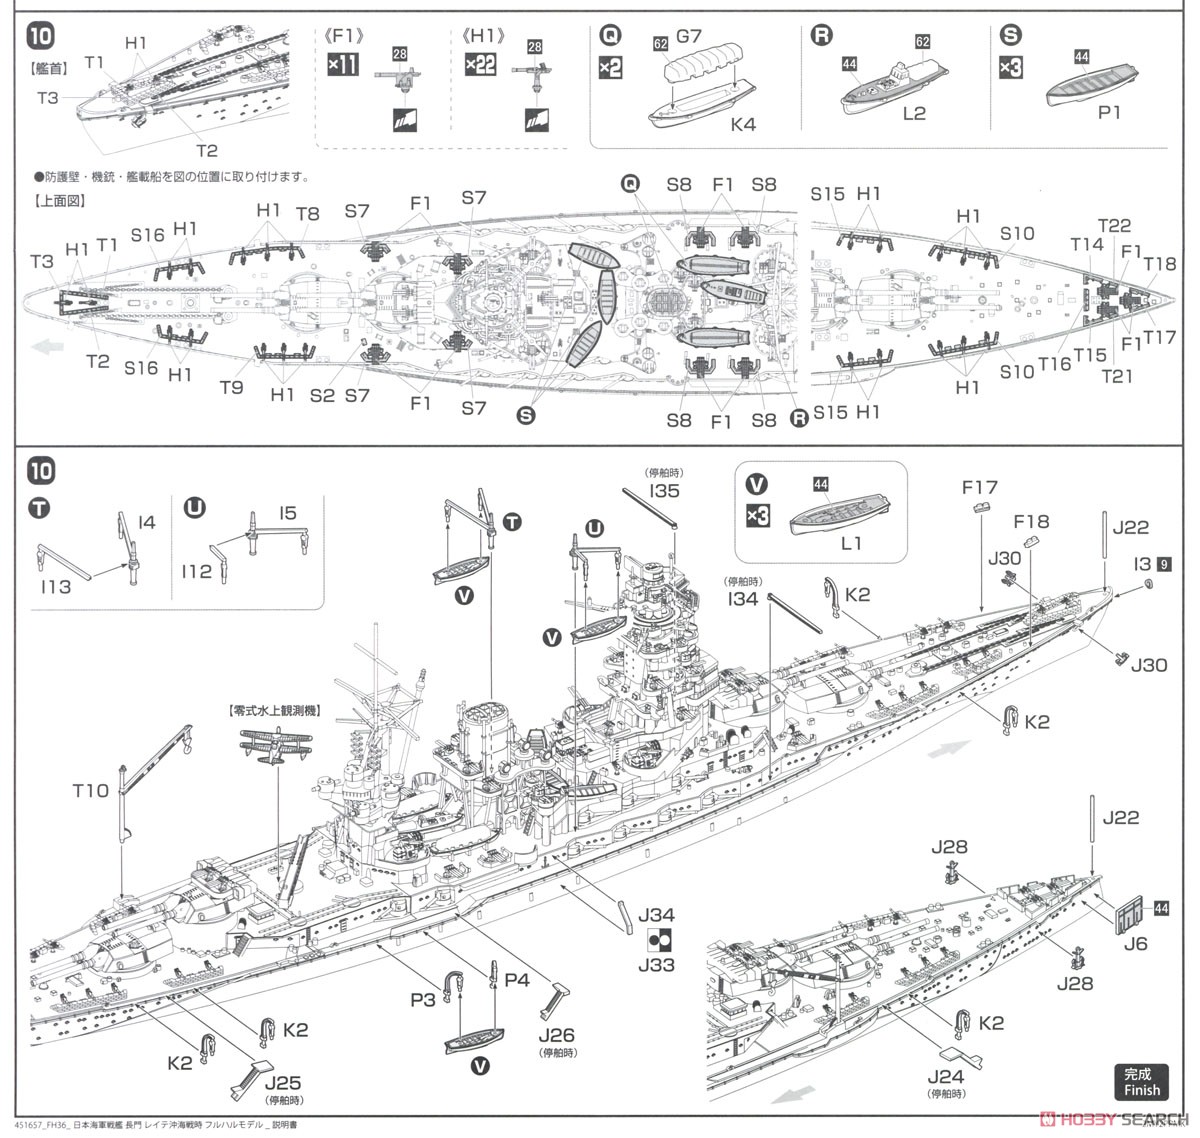 日本海軍戦艦 長門 レイテ沖海戦時 フルハルモデル (プラモデル) 設計図6